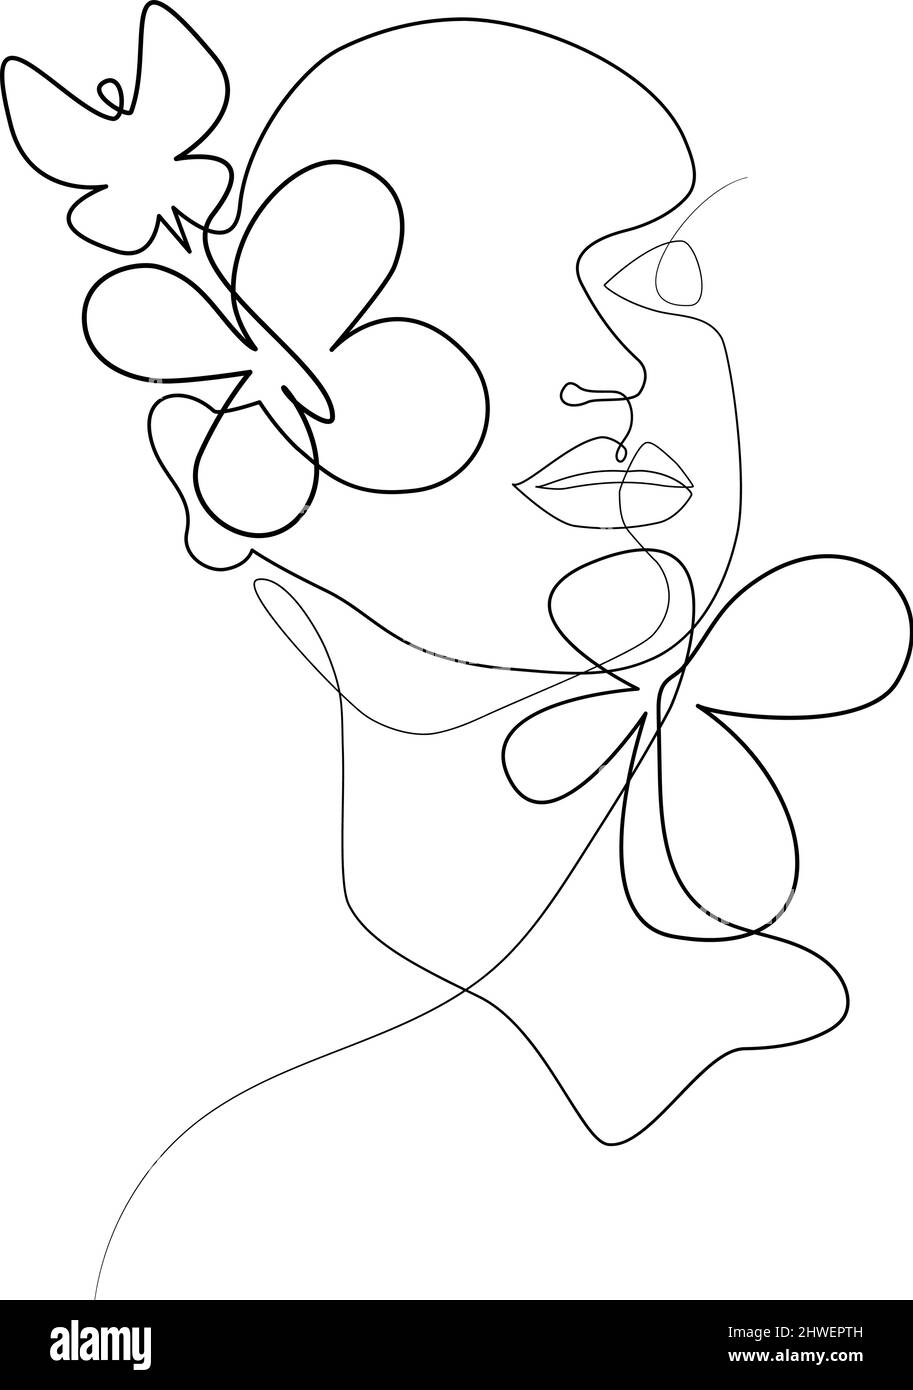 Umrisszeichnung eines weiblichen Gesichts mit Schmetterling und Blumen, die mit einer durchgehenden Linie gezeichnet sind. Von Hand gezeichnet. Moderne einzeilige Kunst, weibliches Porträt, ästhetische Umrisse. Tolles Poster, Tasche, Aufdruck, Aufkleber, Logo. Stock Vektor